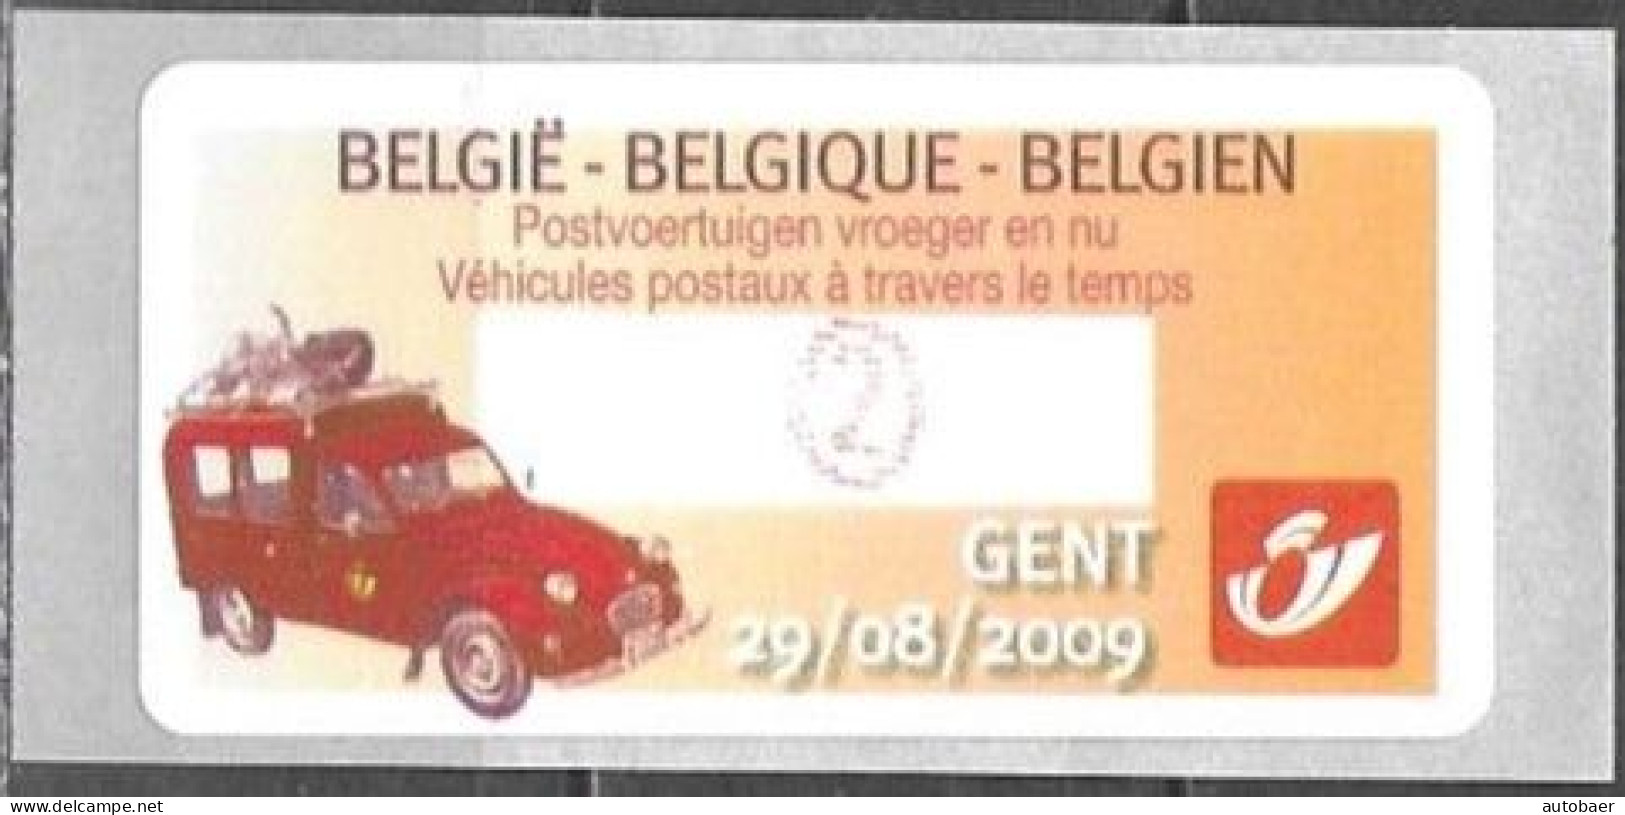 Belgium Belgique Belgien 2009 ATM Machine Stamp Gent Citroen 2CV Mi. No. 67 "2" MNH Neuf ** Postfrisch - Ungebraucht